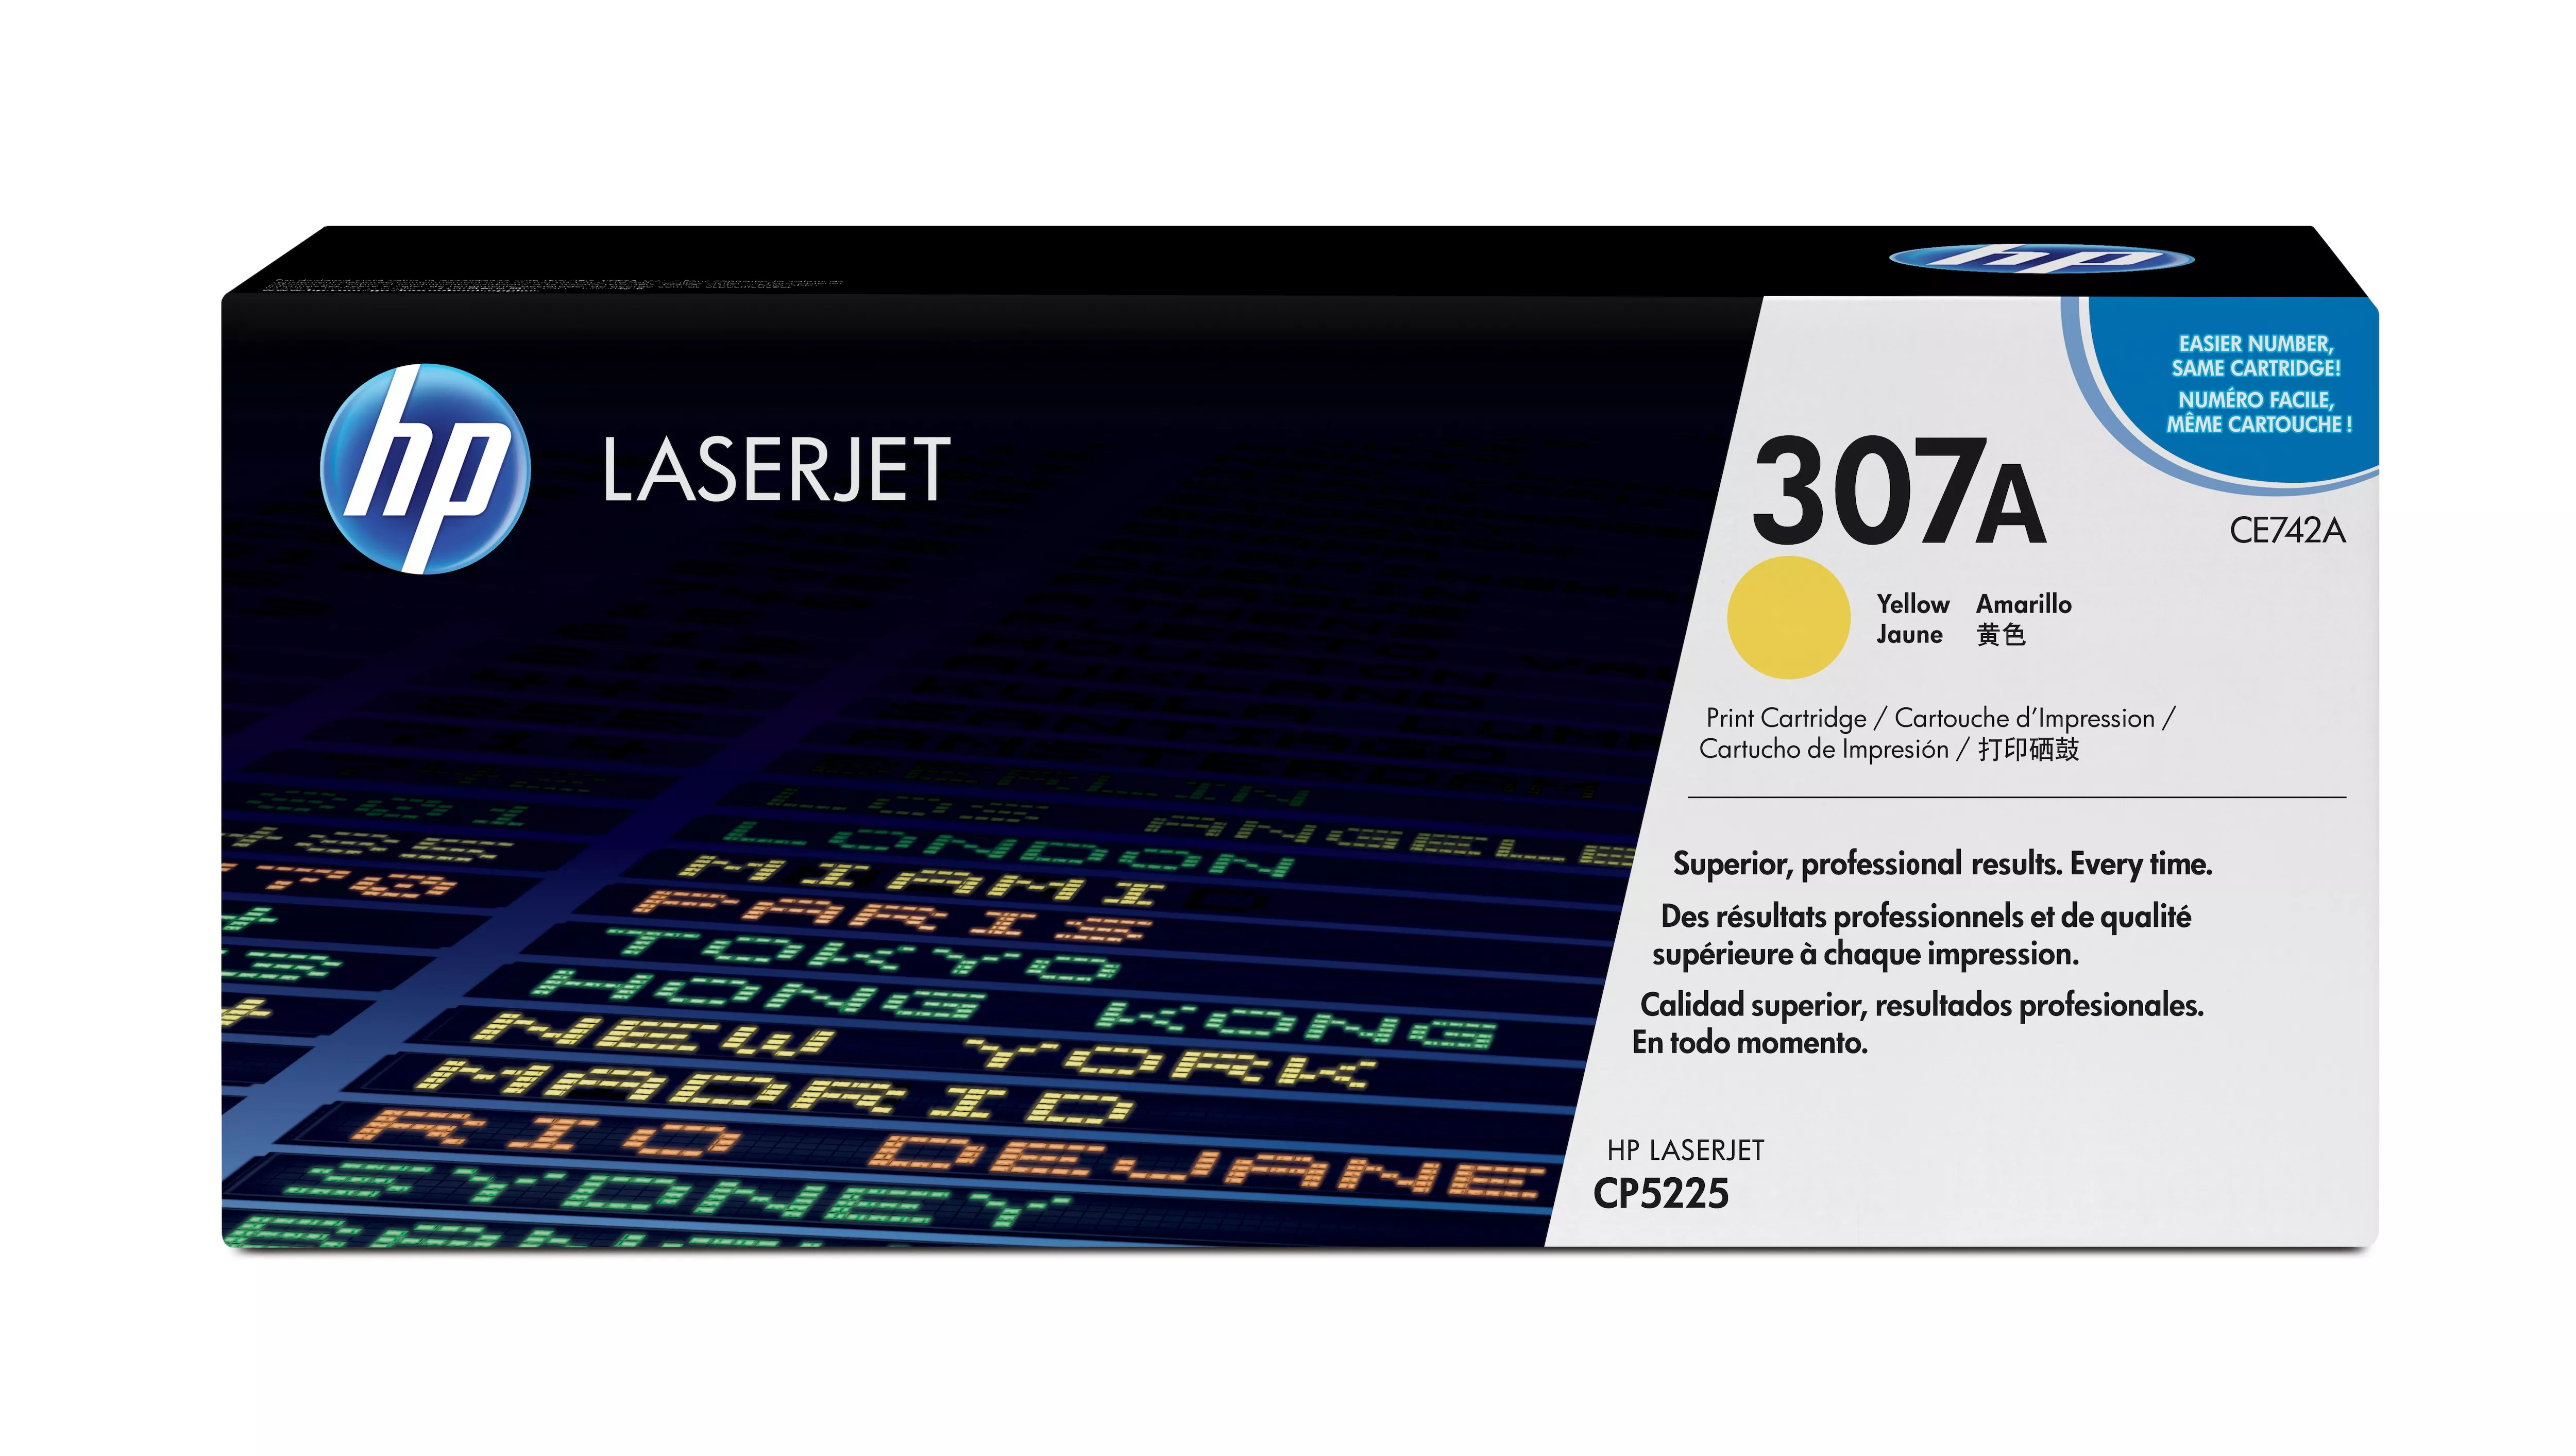 Achat HP original Colour LaserJet CE742A Toner cartridge yellow au meilleur prix